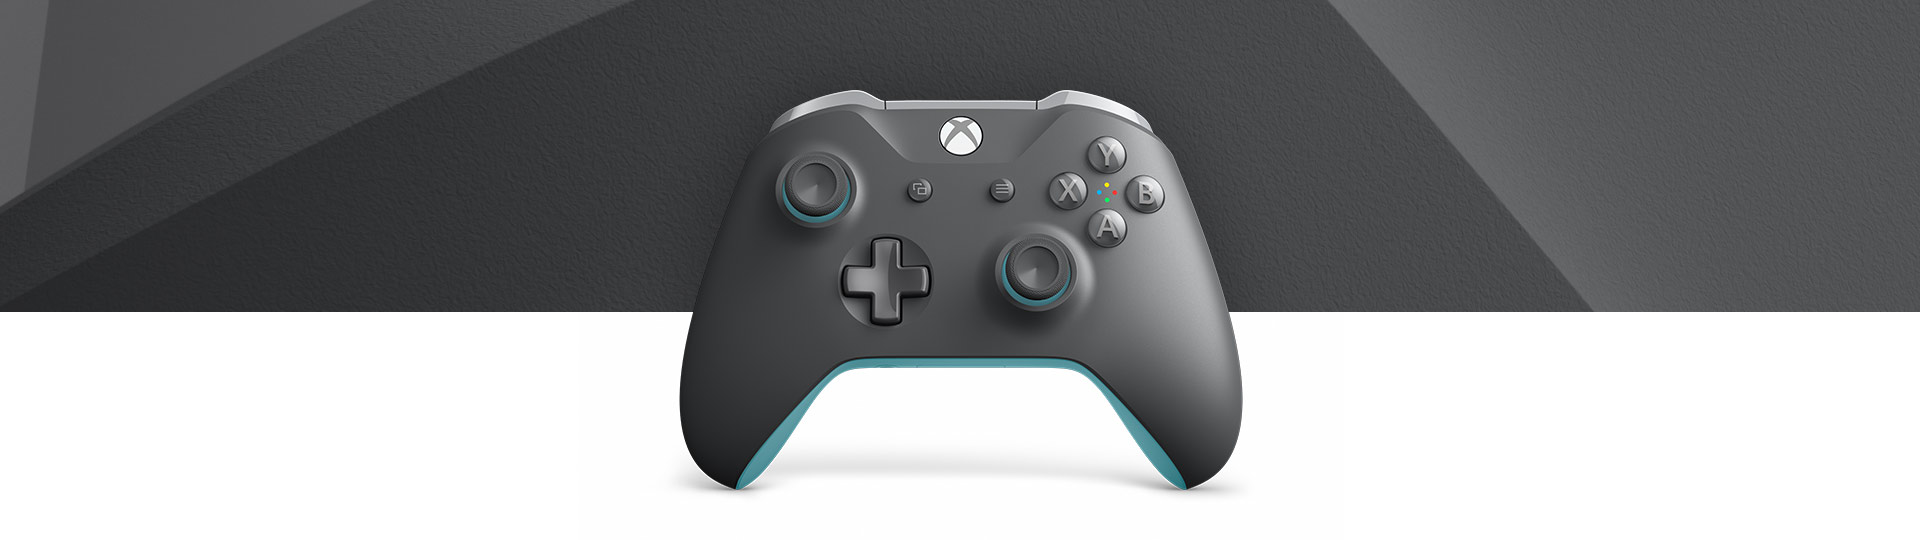 灰色/藍色 Xbox 無線控制器的正面圖